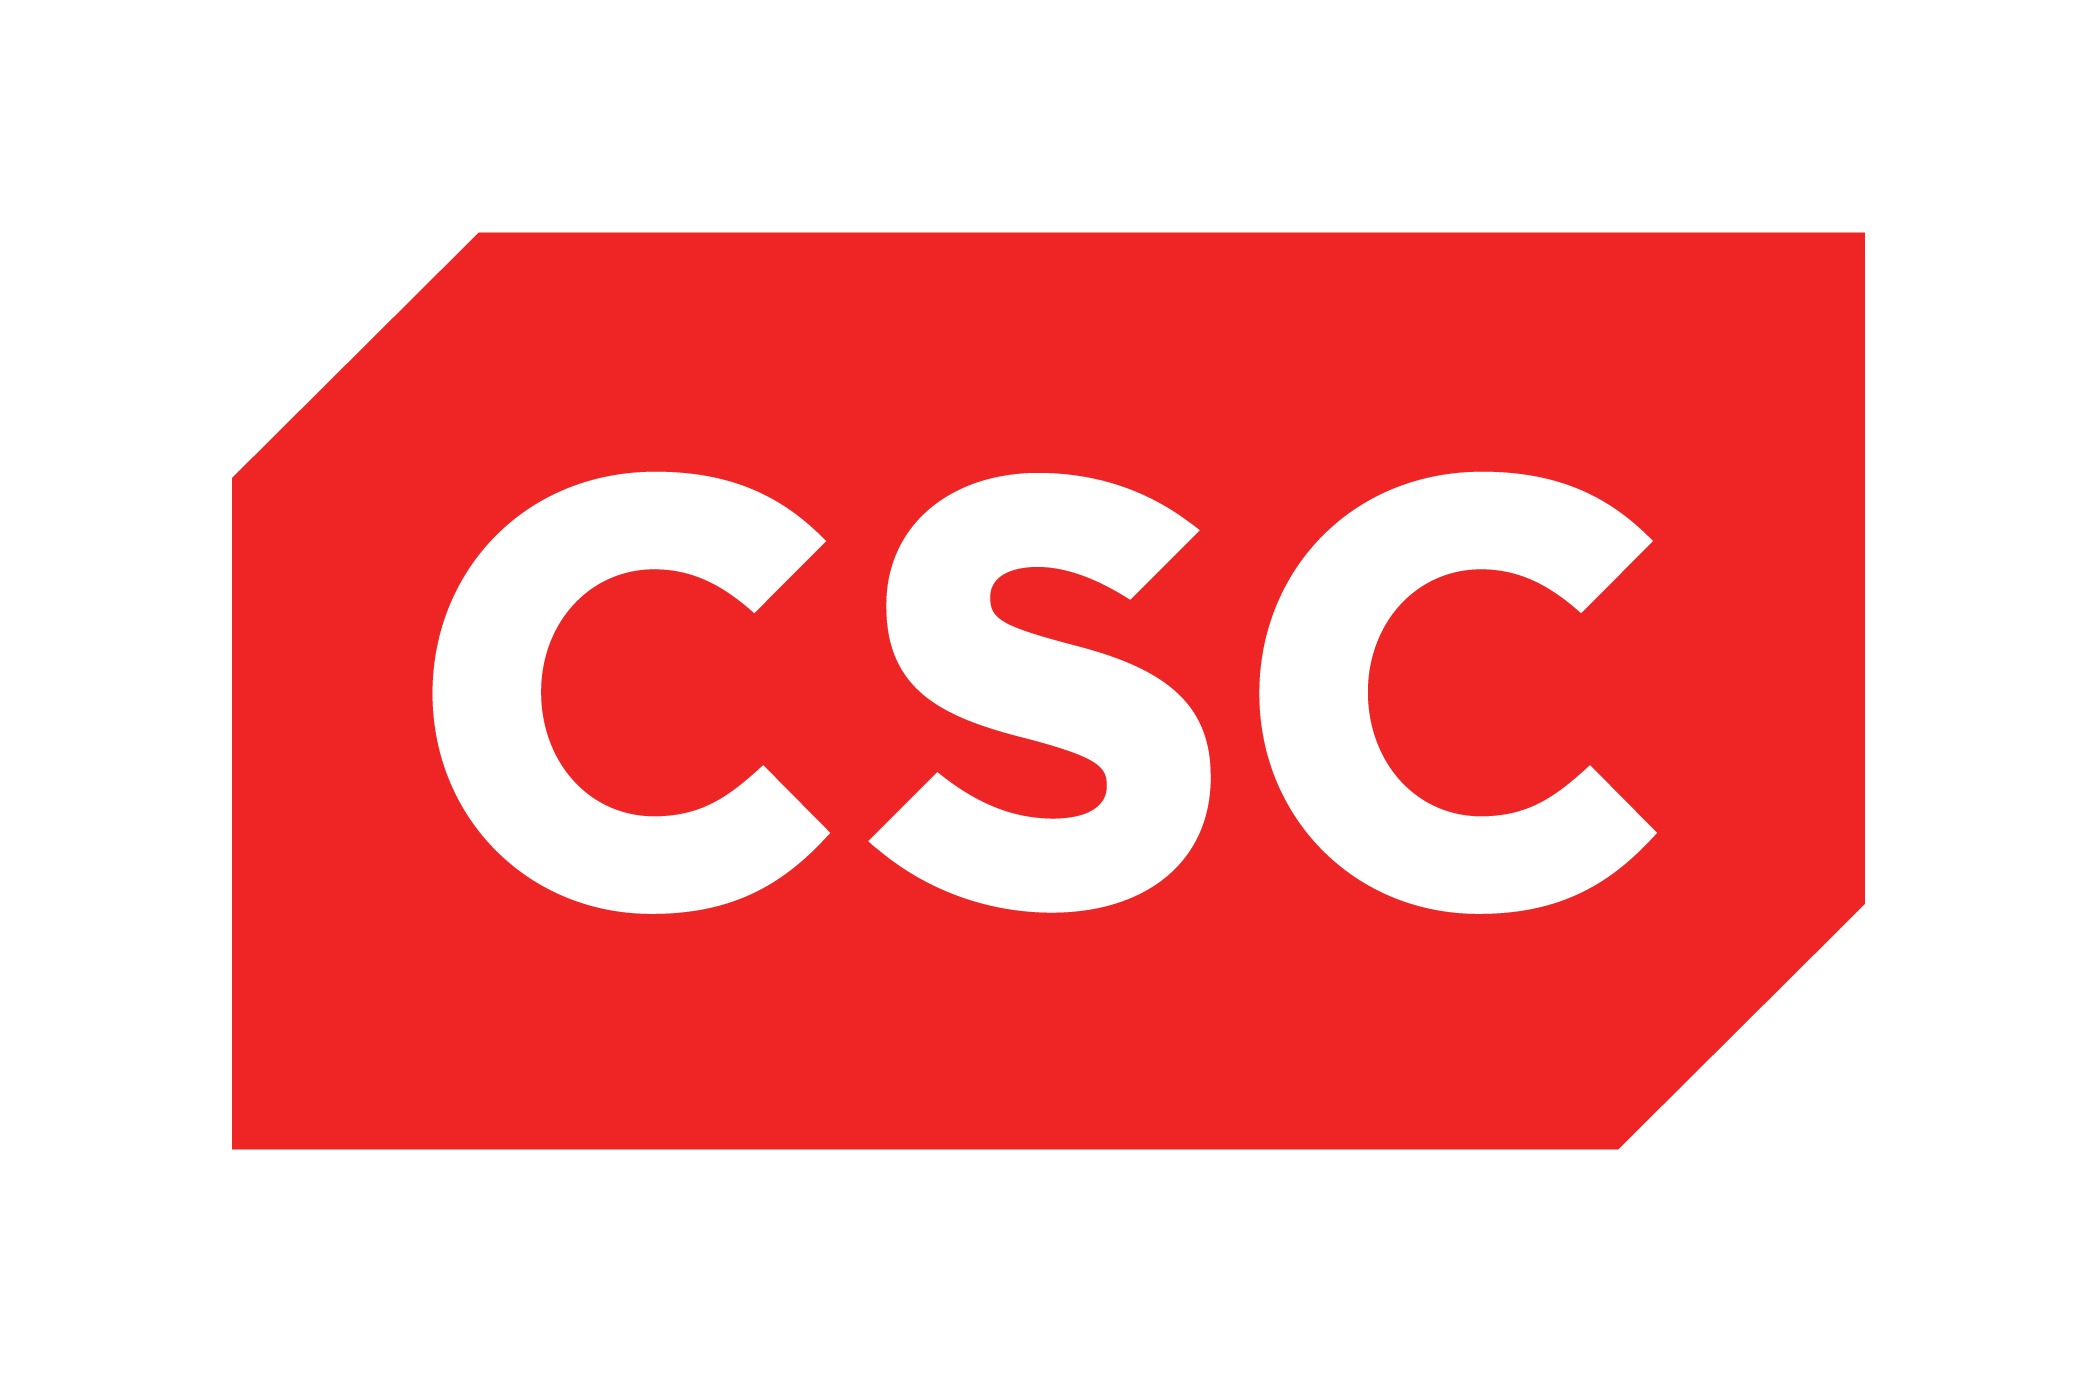 Nouveau_logo_csc